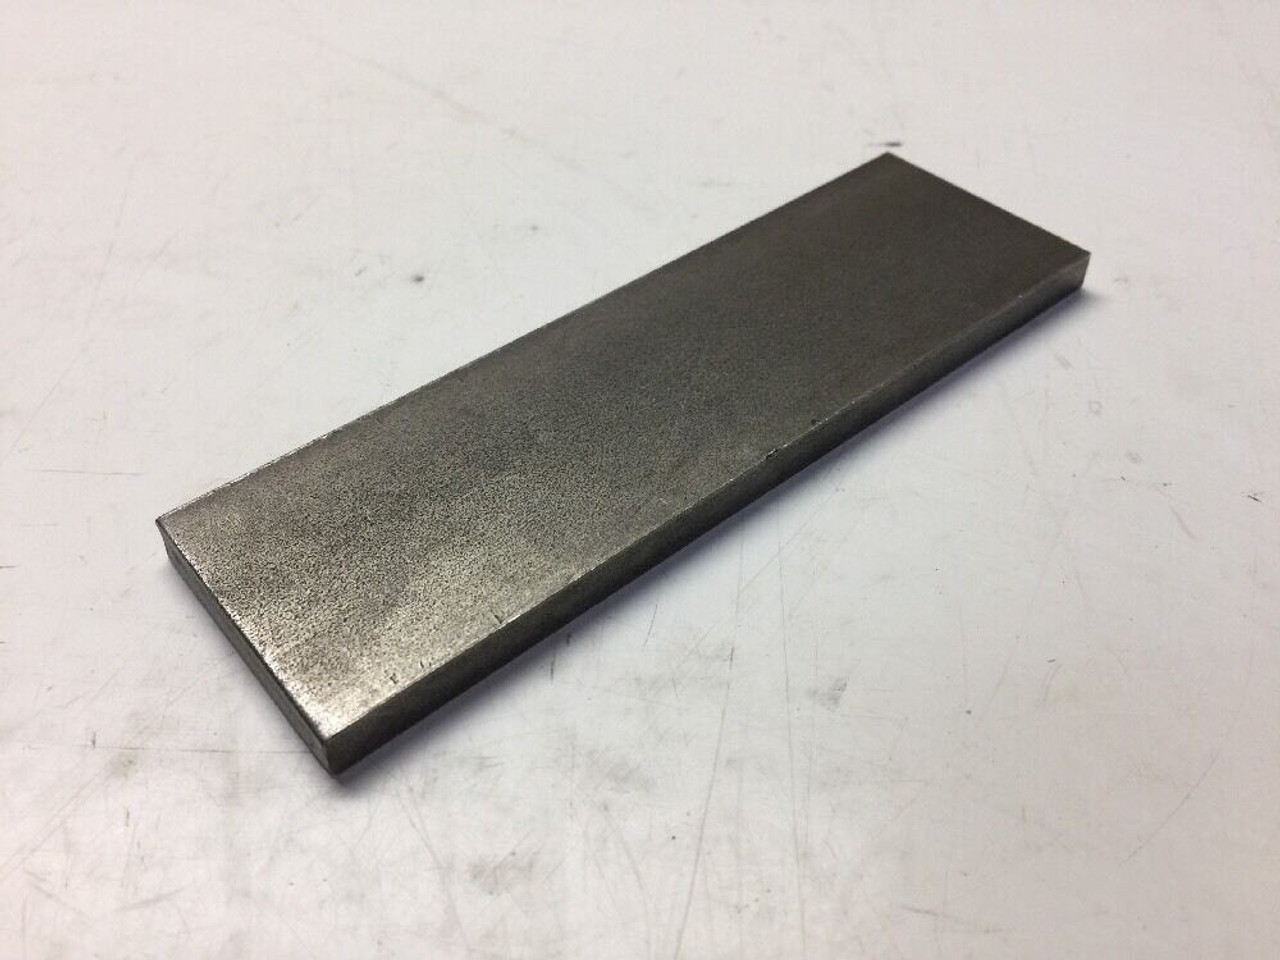 Steel Plate 10626160 General Dynamics 4-1/2" x 1-1/2" x 1/4"